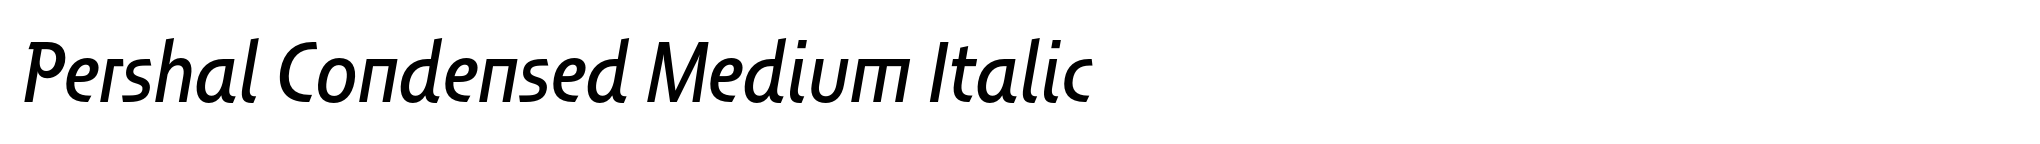 Pershal Condensed Medium Italic image